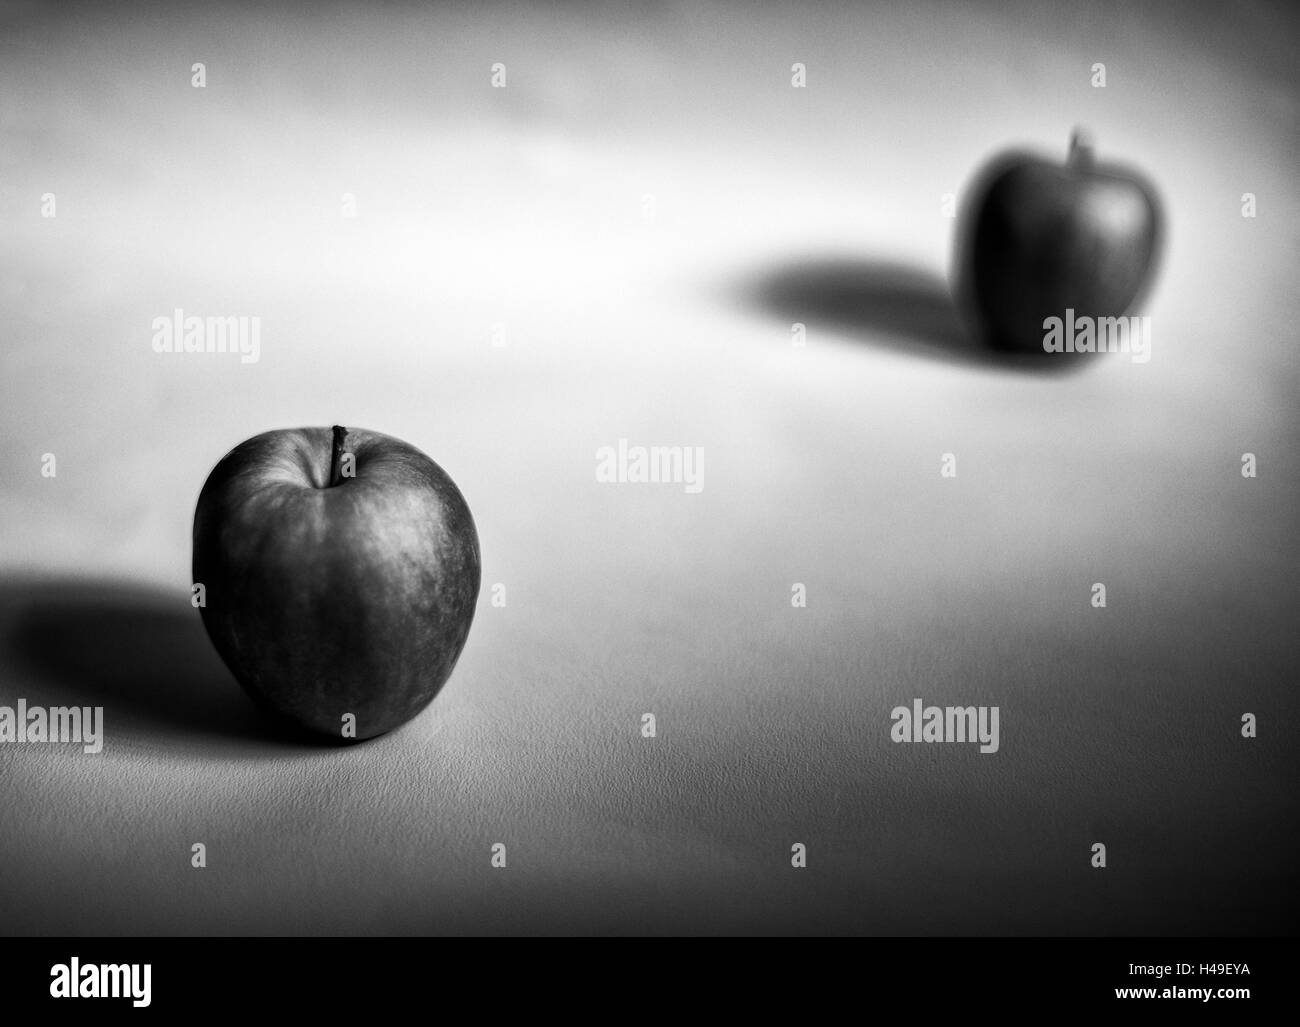 L'une des pommes à l'autre hors focus disposés sur un fond blanc. Montrant la forme, la forme et la texture des fruits b&w. Banque D'Images